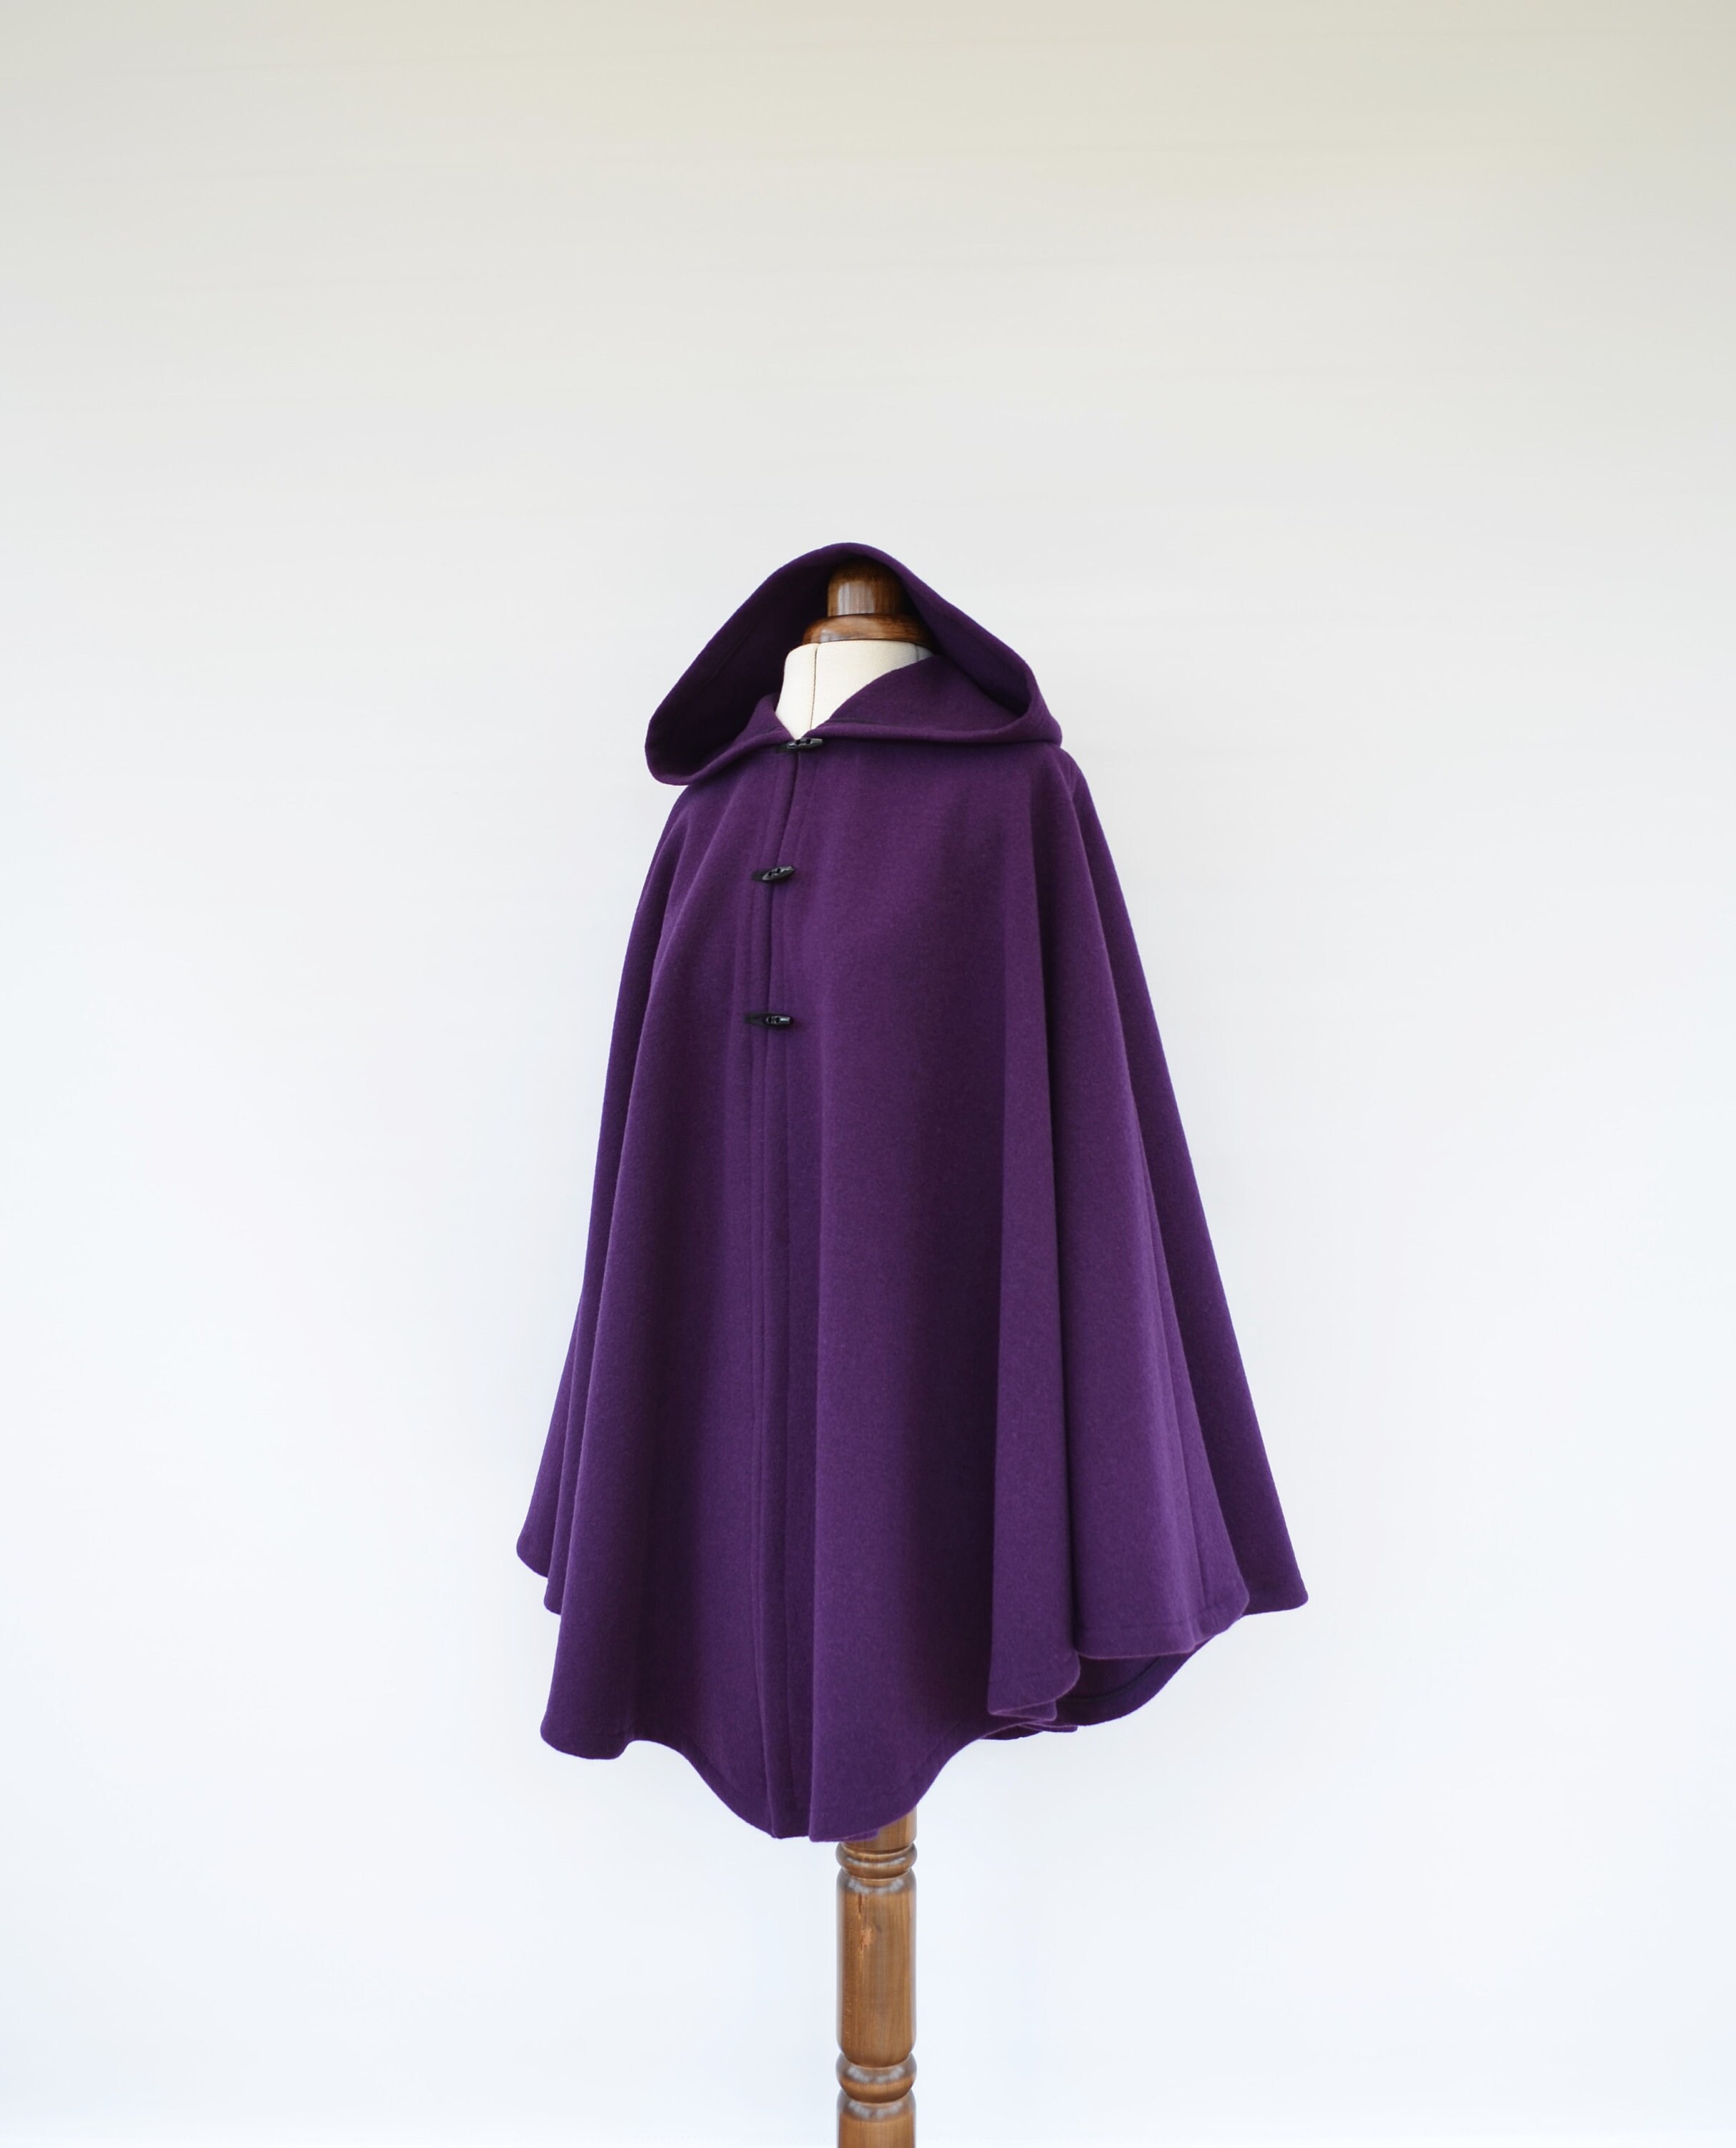 Purple Wool Cloak Cashmere Hooded Cape Jacket Purple Wool | Etsy